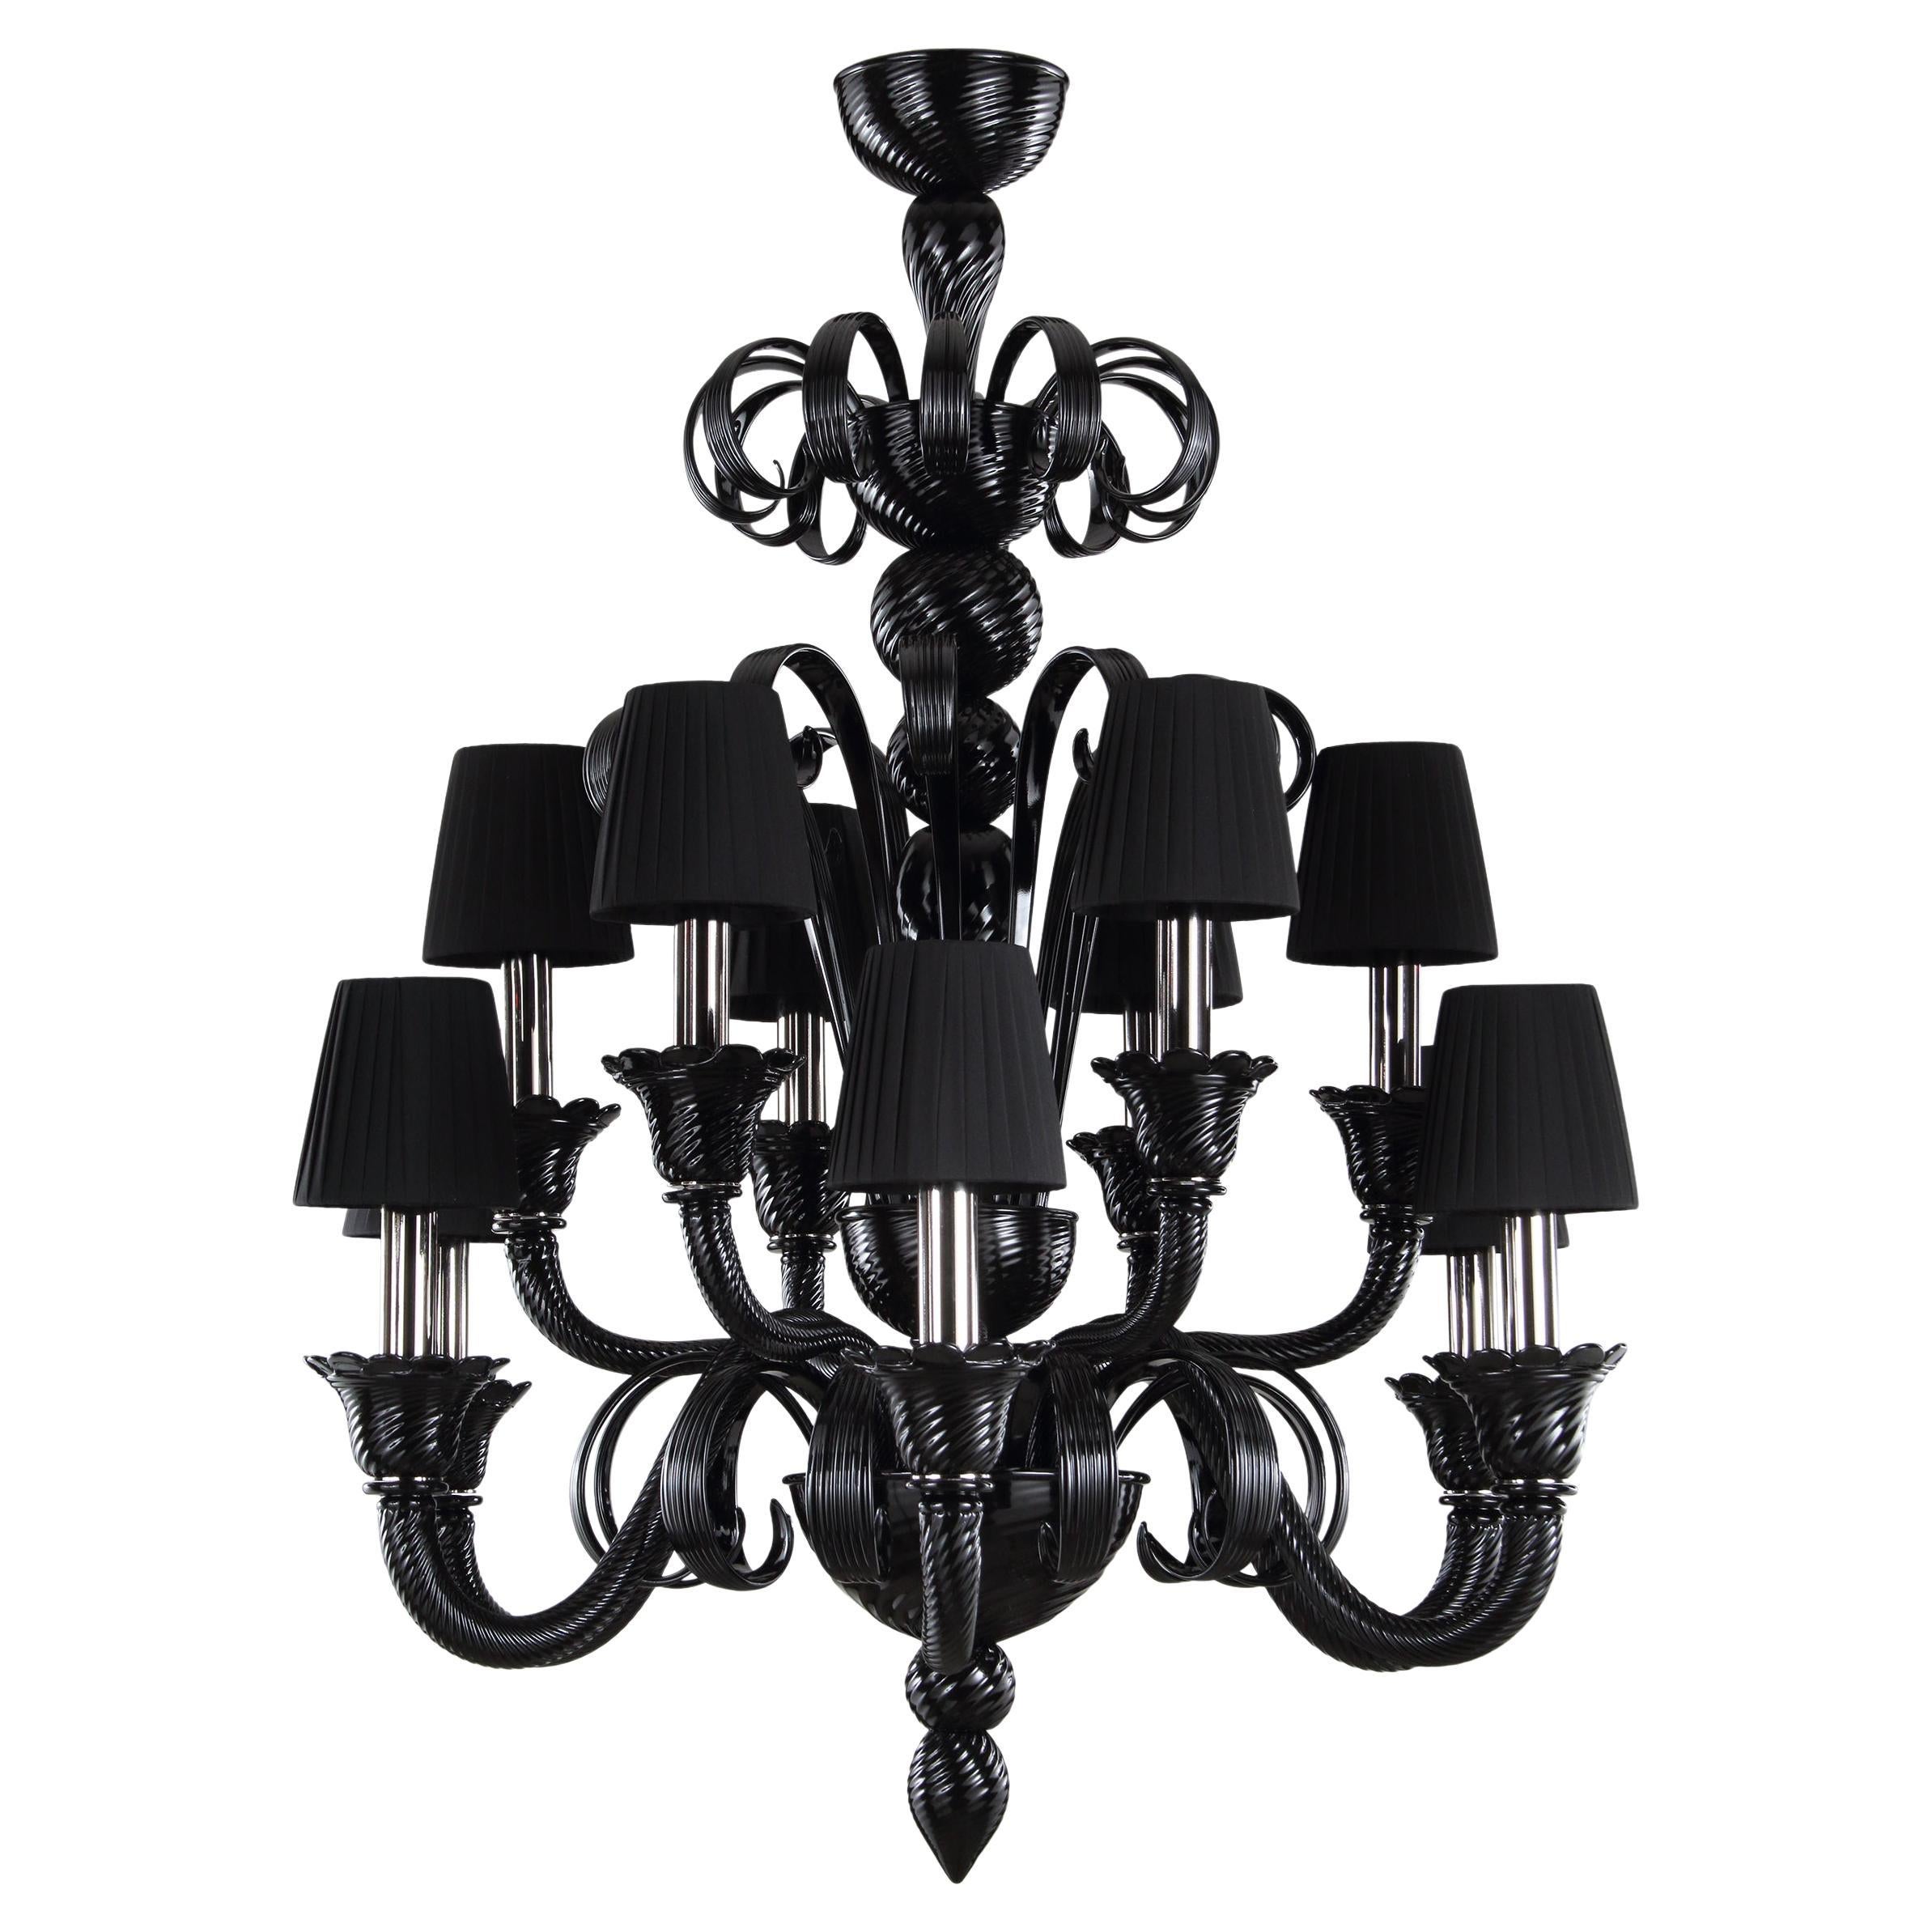 Künstlerischer Kronleuchter 6+6 Arme aus schwarzem Muranoglas, Lampenschirme IKO von Multiforme